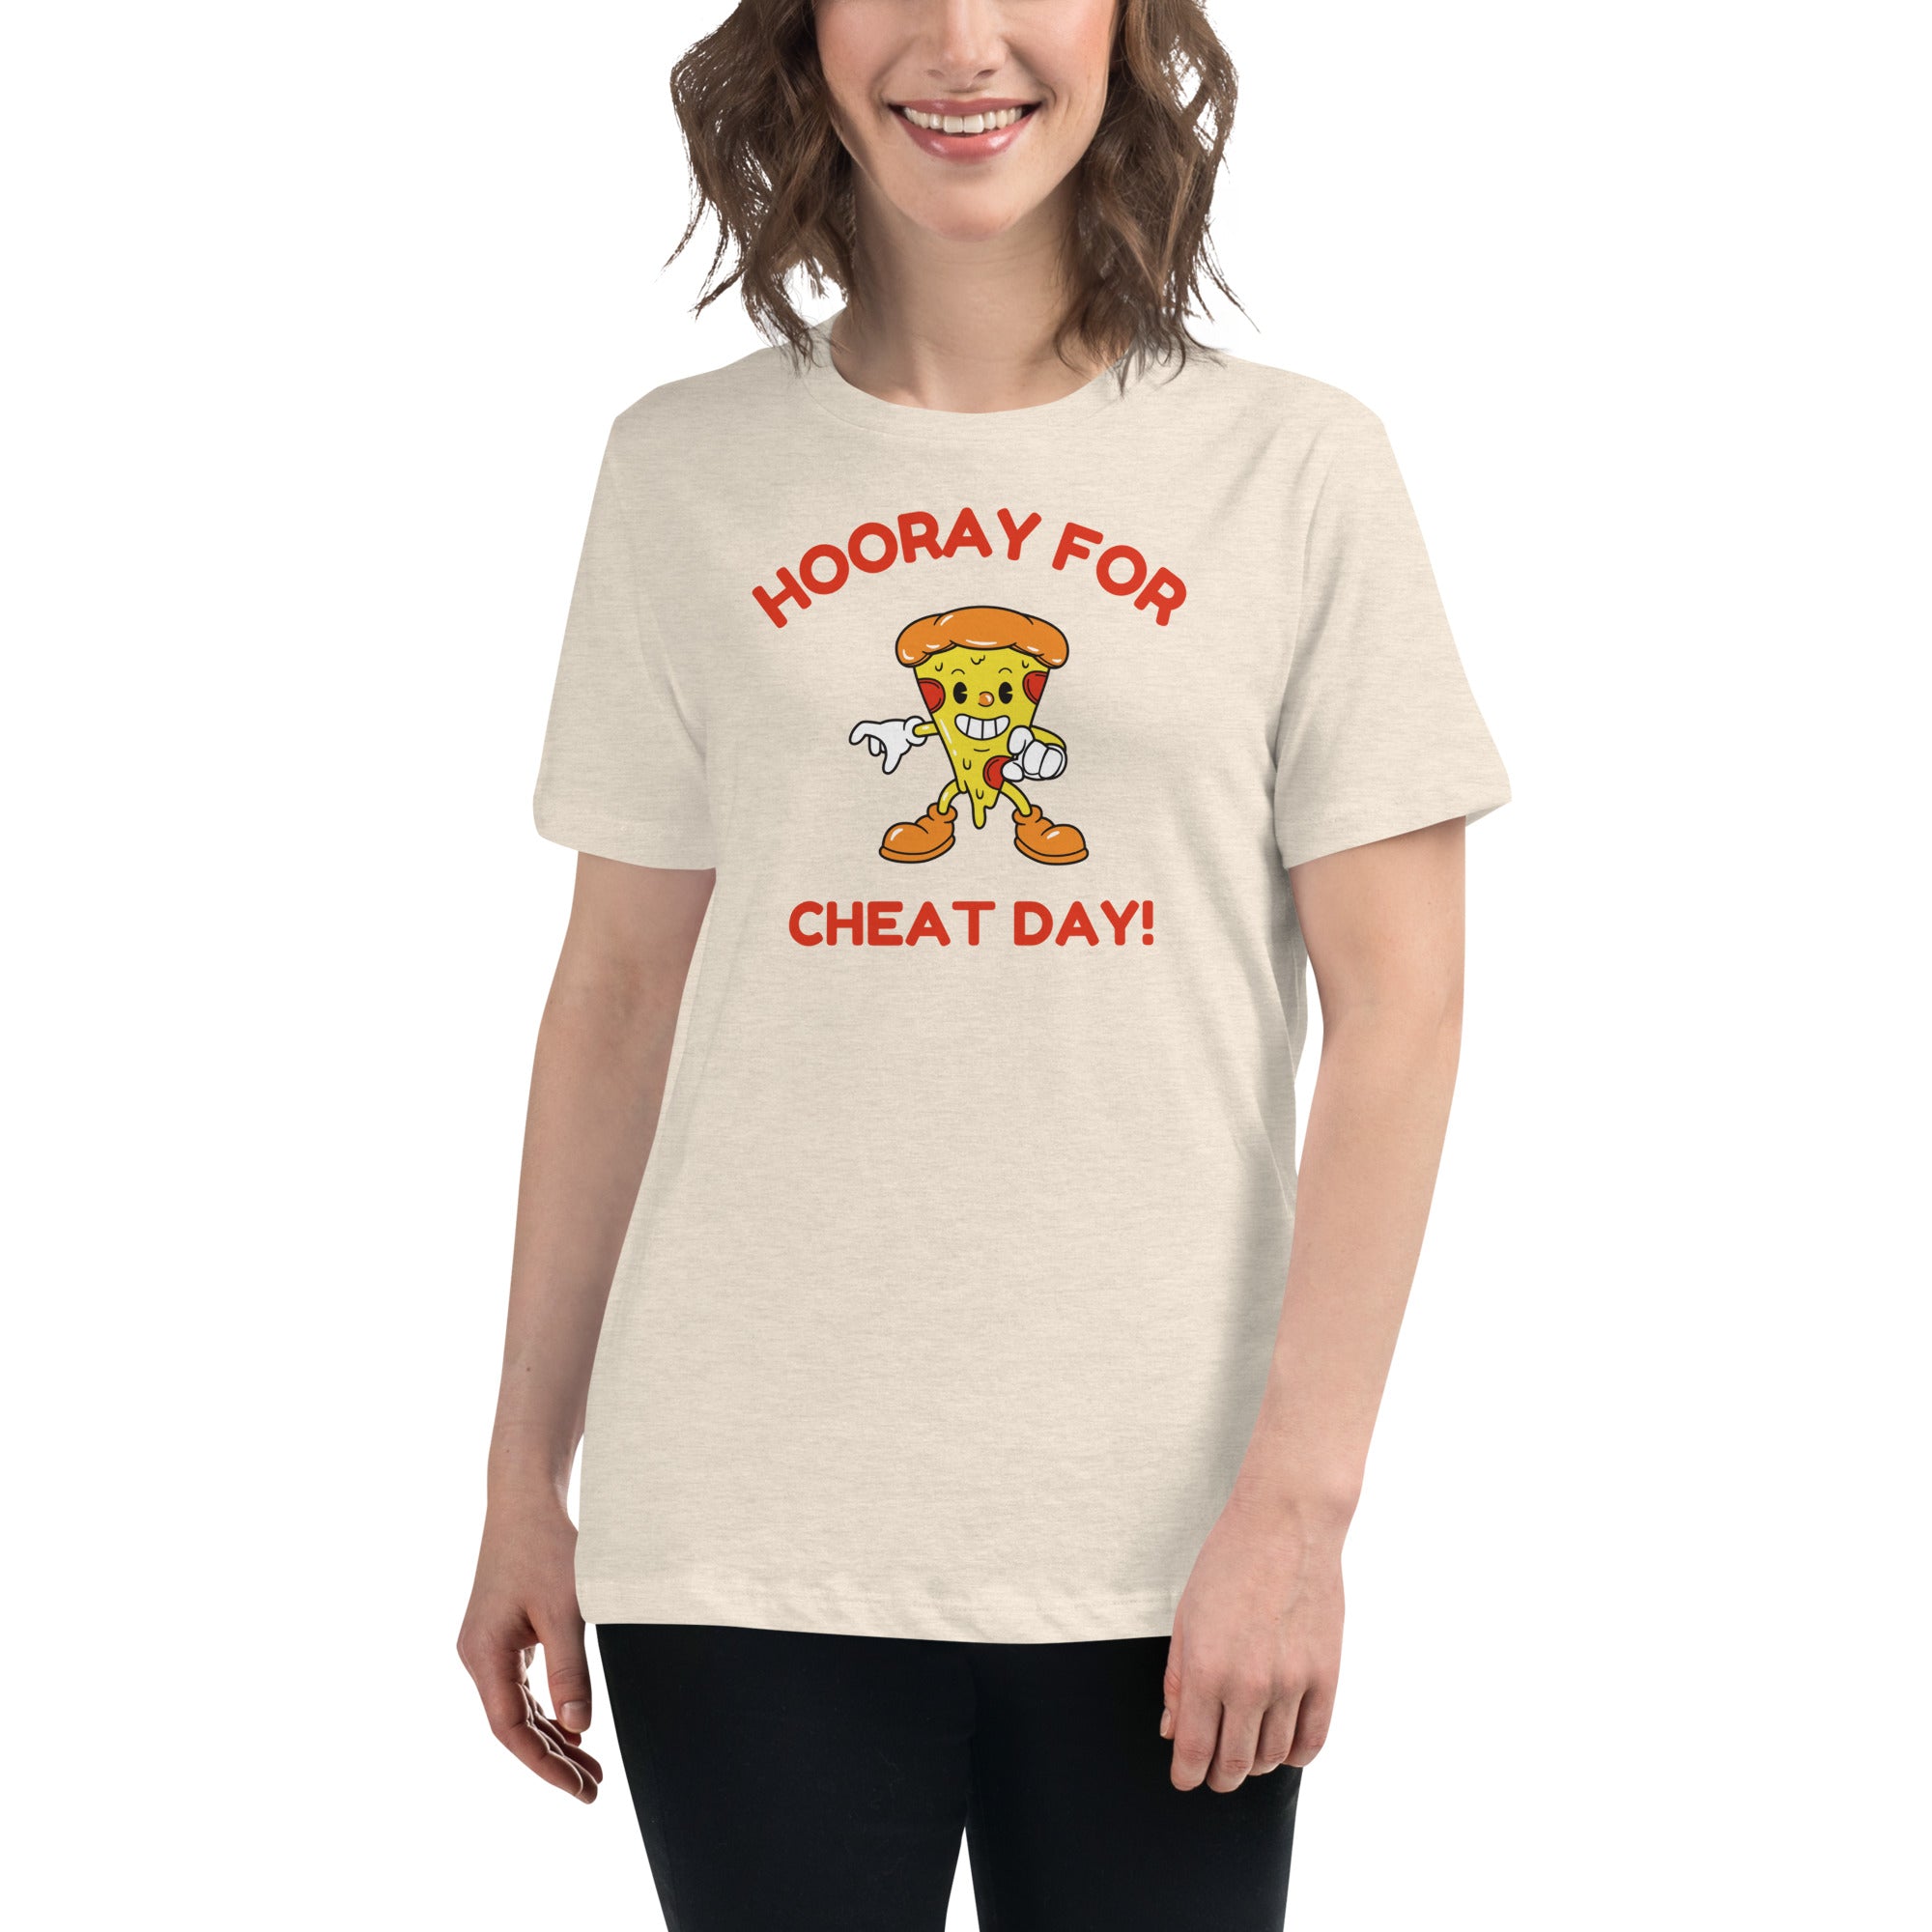 Hooray For Cheat Day! Women's Premium T-Shirt